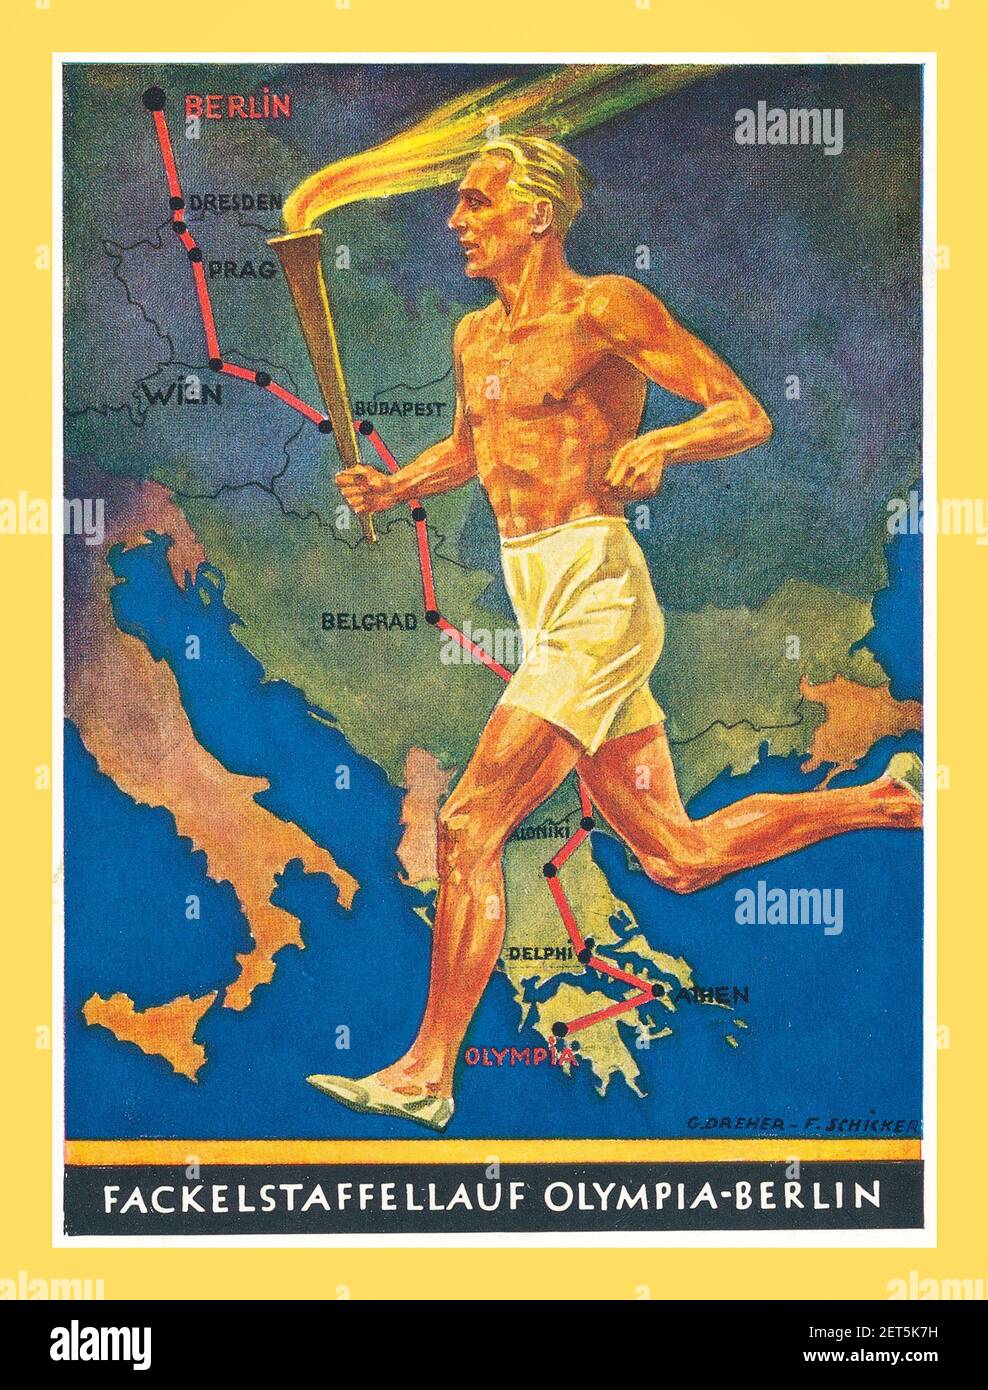 Berlin Olympics 1936 affiche de propagande vintage Allemagne nazie Jeux Olympiques Relais de la flamme de la Grèce à Berlin Allemagne 'fackelstaffellauf Olympia-Berlin' Banque D'Images